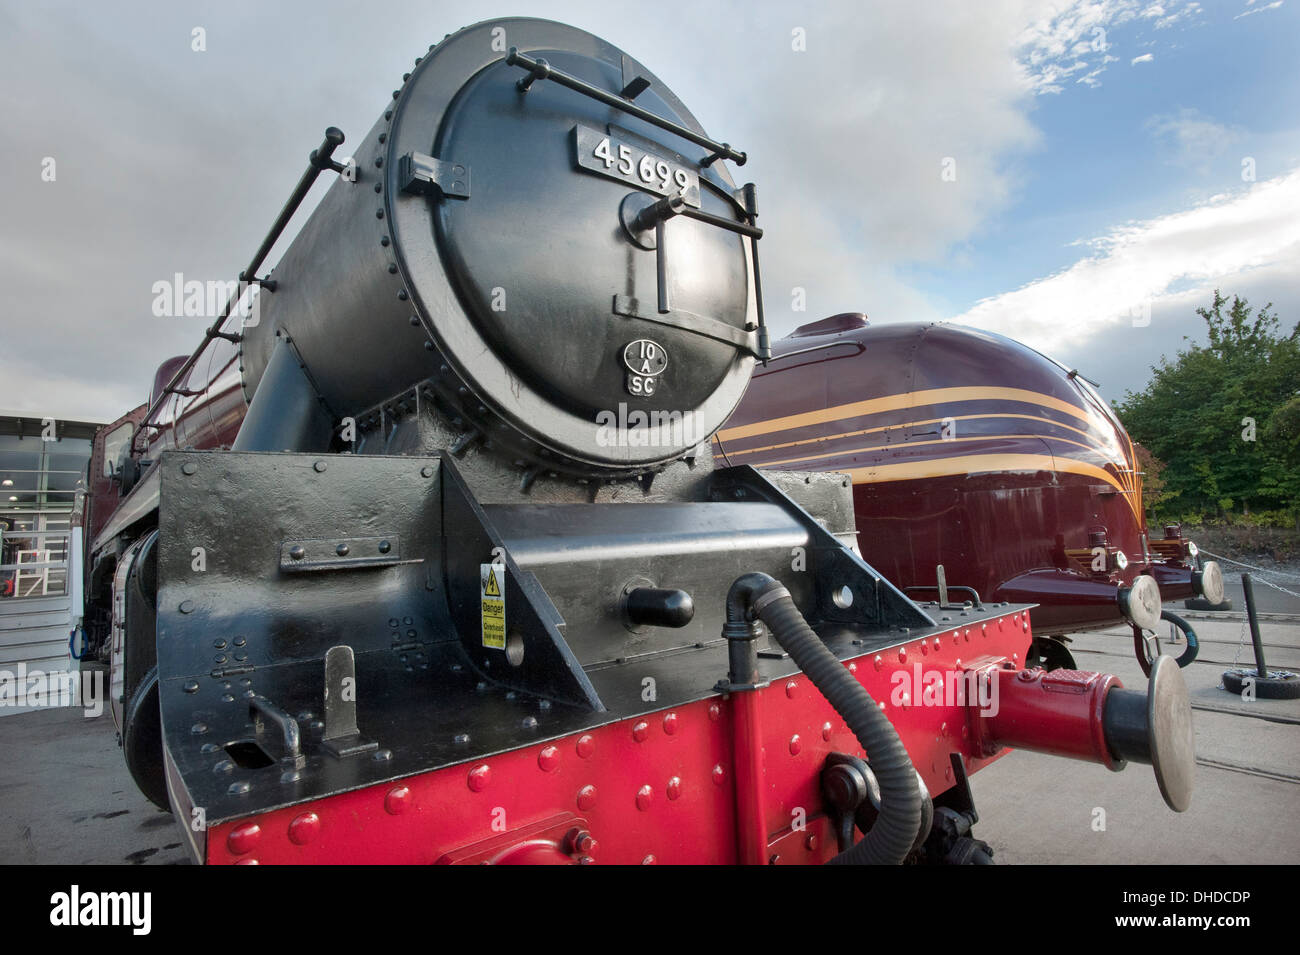 LMS (London Midland écossais) Julbilee class locomotive vapeur 45699, "Galatée" se trouve en face de LMS simplifié "Princess Coronation' classe no6229 'Duchess of Hamilton' au National Railway Museum musées regorgent à Shildon, comté de Durham. Banque D'Images